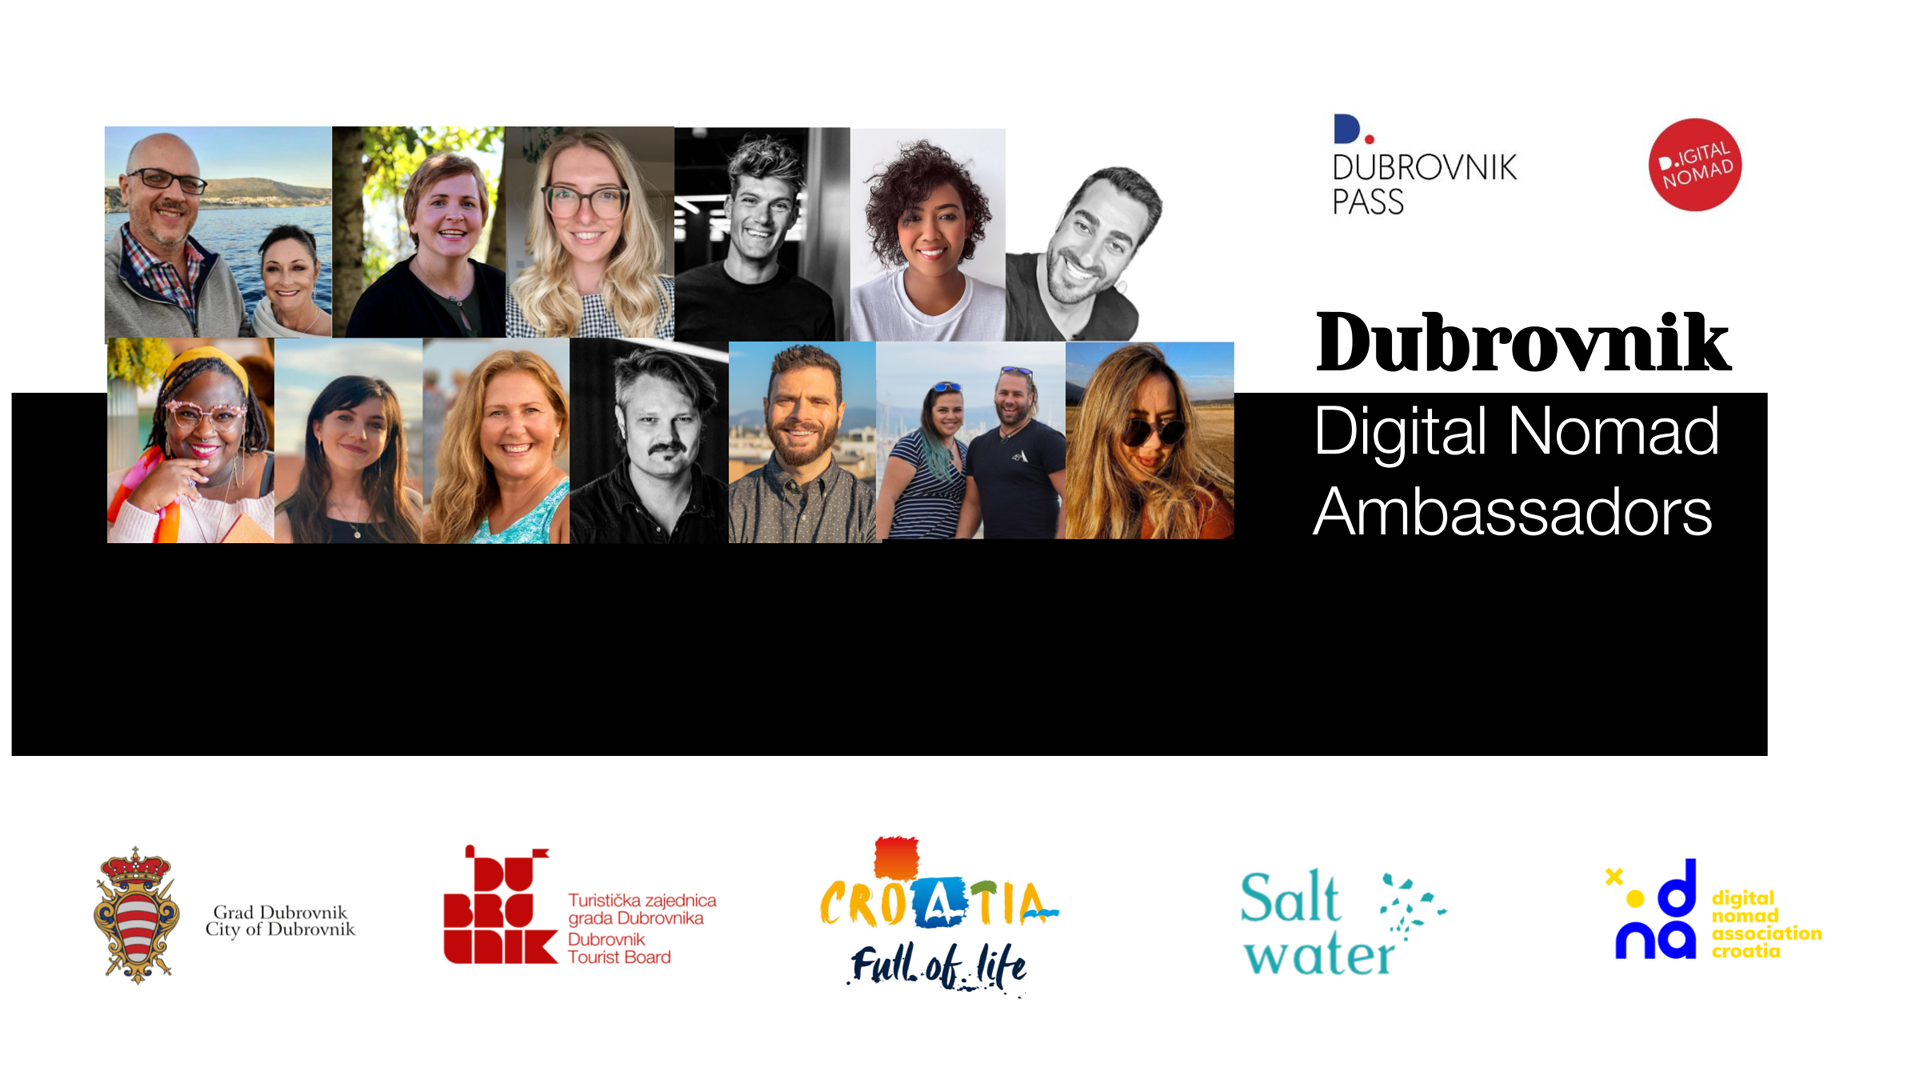 Dubrovnik Digital Nomad Ambassadors